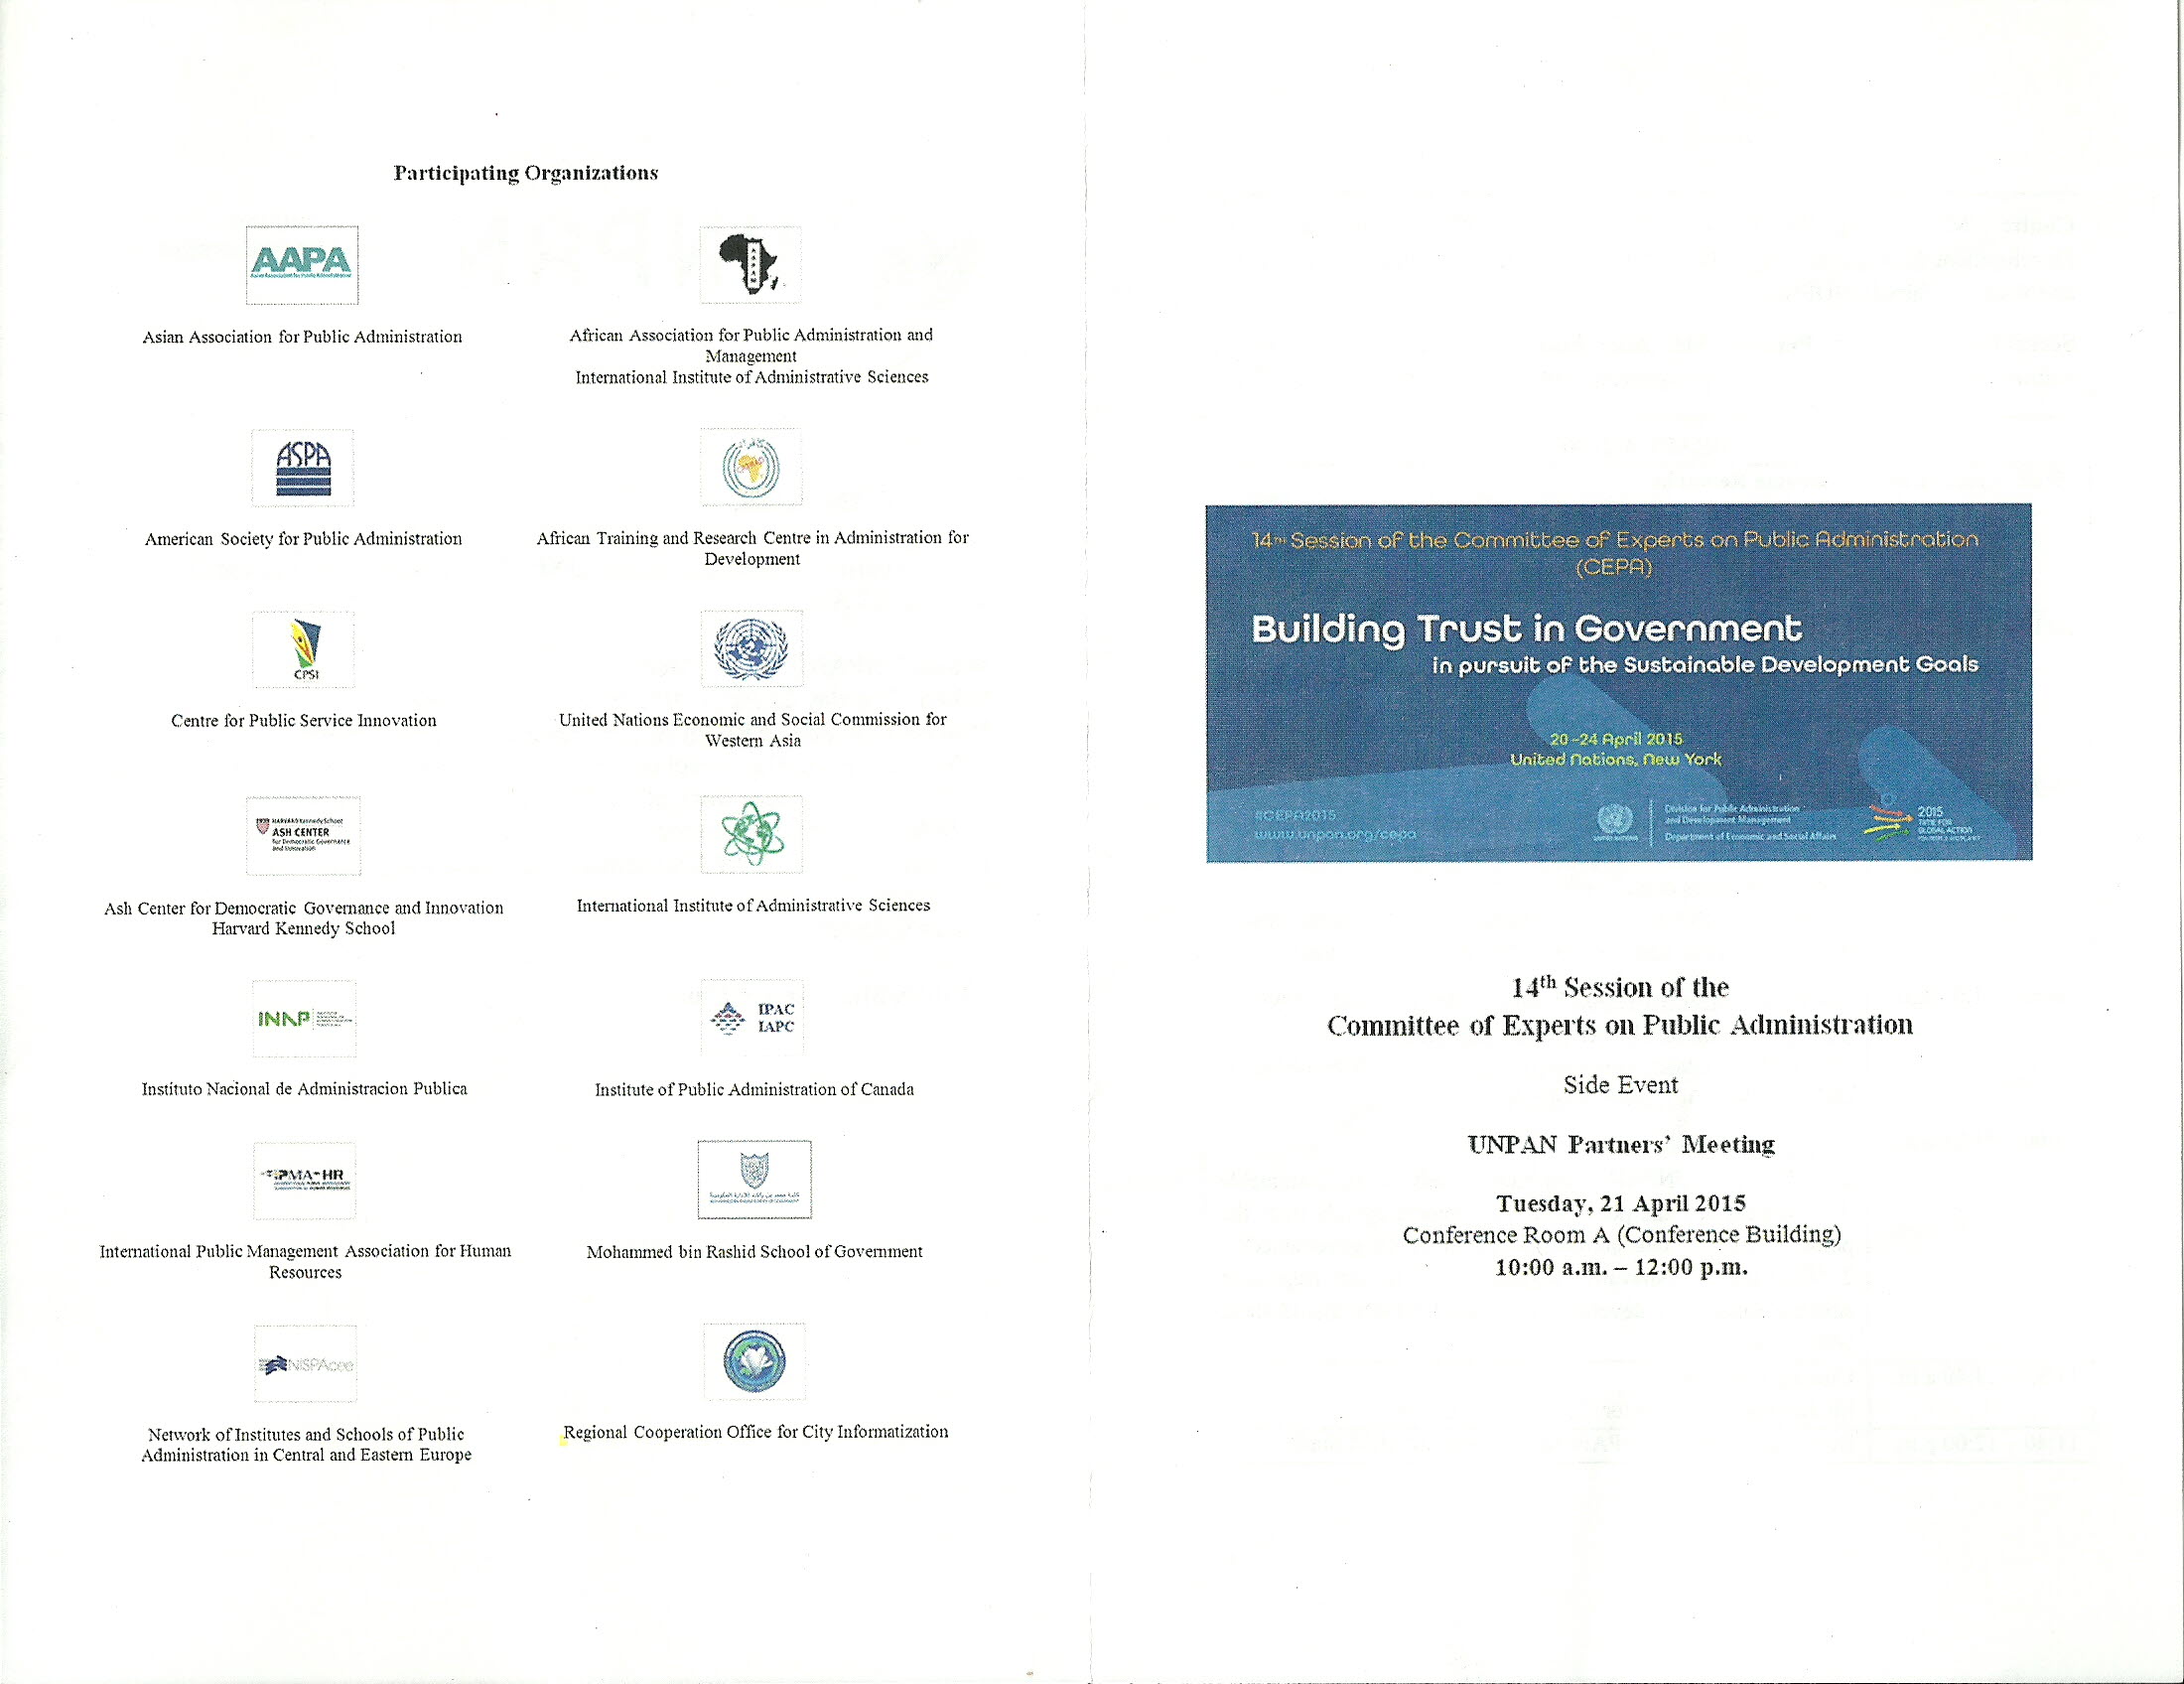 UNPAN-partners-meeting-2015.jpg